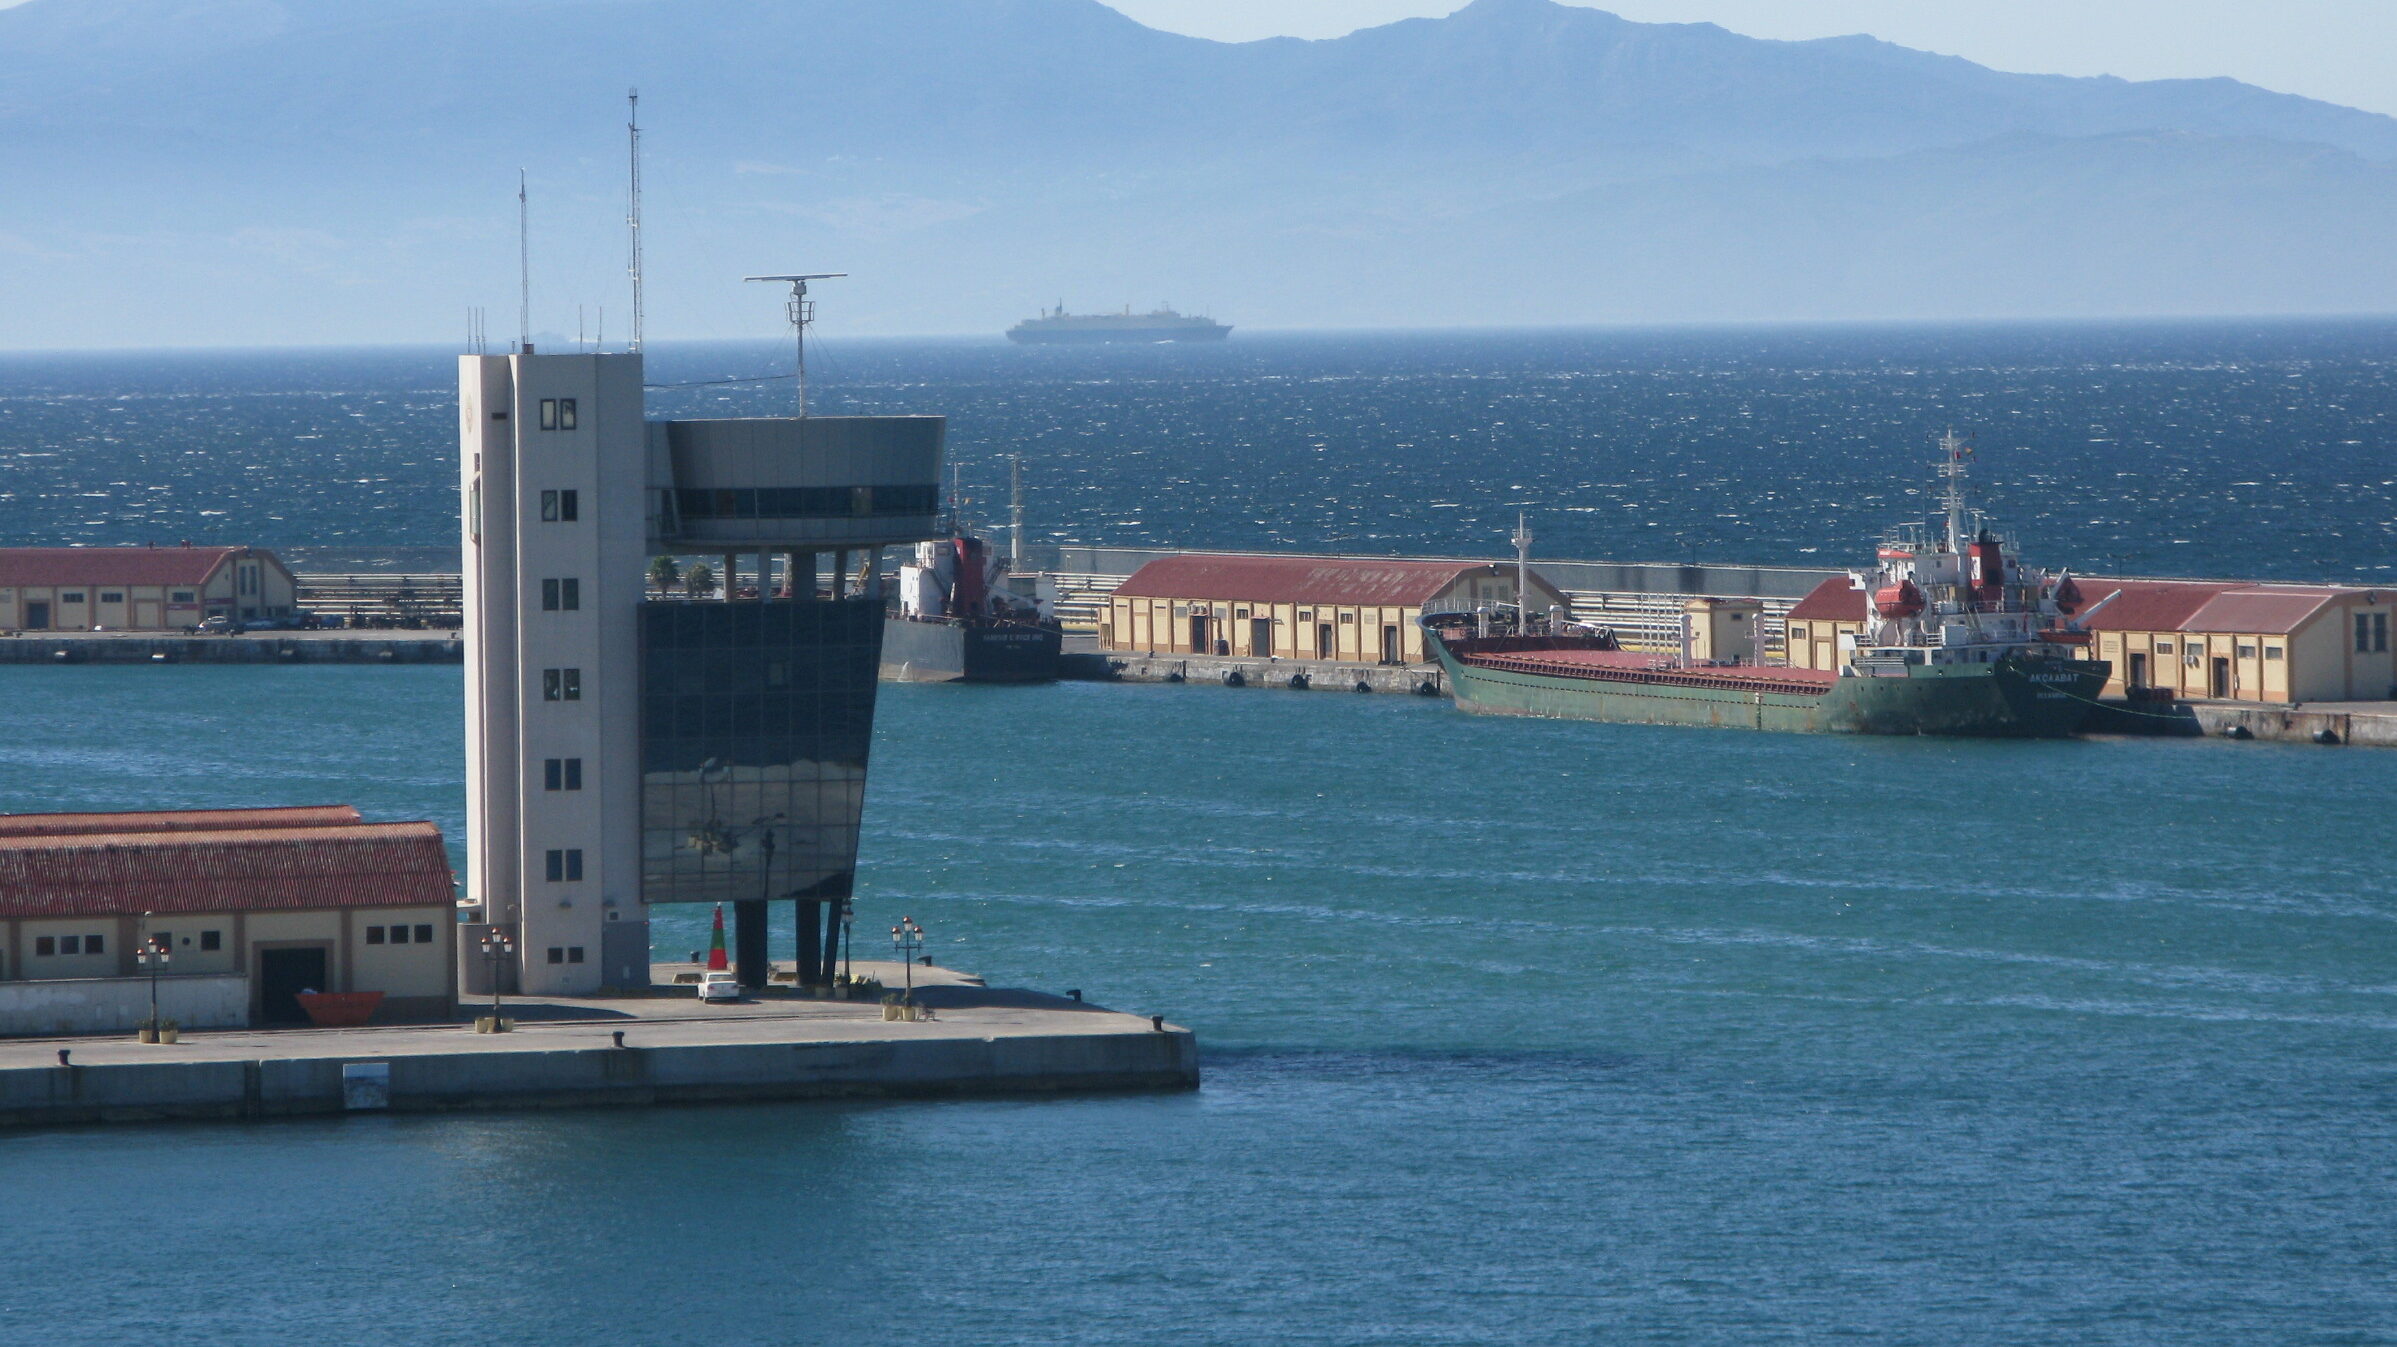 El puerto de Ceuta contratará un servicio de vigilancia de seguridad privada controlar el embarque y el acceso de vehículos en diversas zonas del recinto portuario.